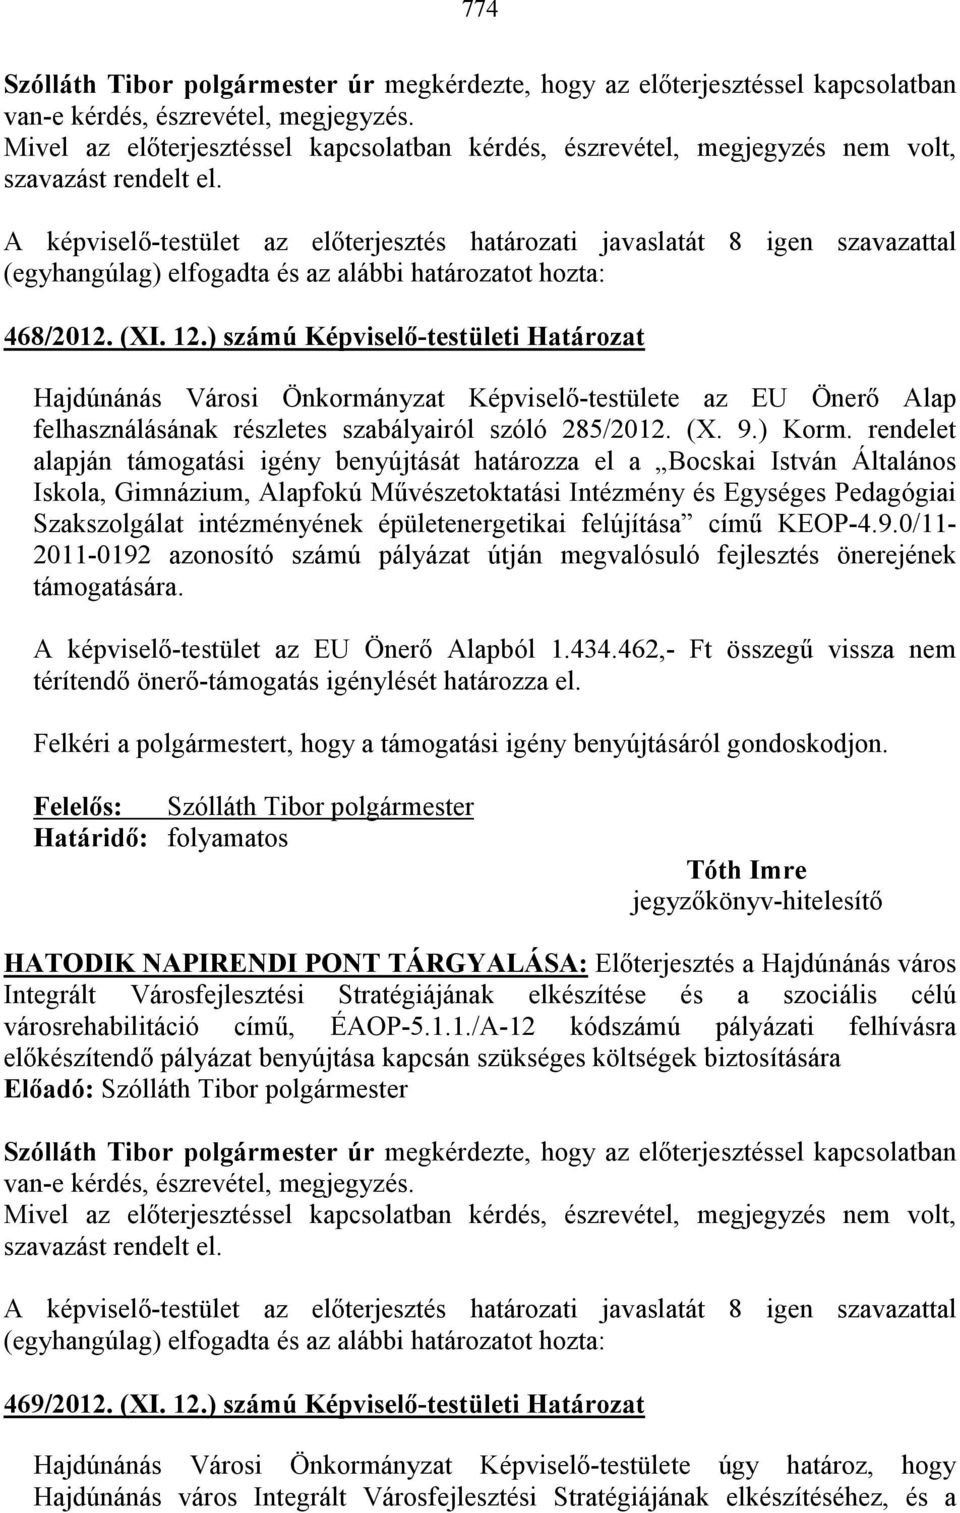 ) számú Képviselı-testületi Határozat Hajdúnánás Városi Önkormányzat Képviselı-testülete az EU Önerı Alap felhasználásának részletes szabályairól szóló 285/2012. (X. 9.) Korm.